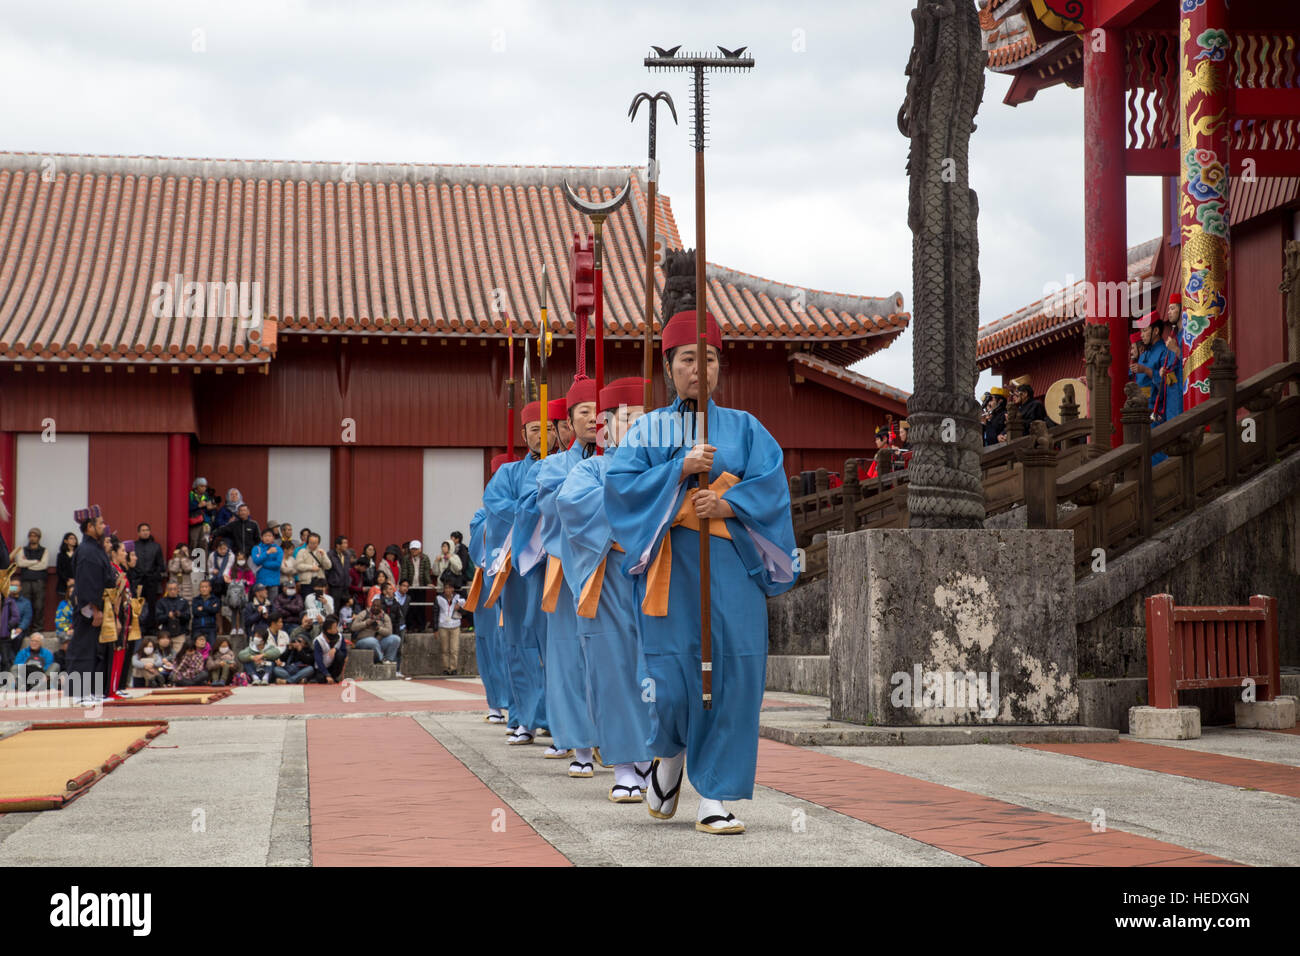 Okinawa, Giappone - 02 Gennaio 2015 : vestito a persone che svolgono uno spettacolo presso il tradizionale nuovo anno celebrazione a Shuri-jo il Castello Foto Stock